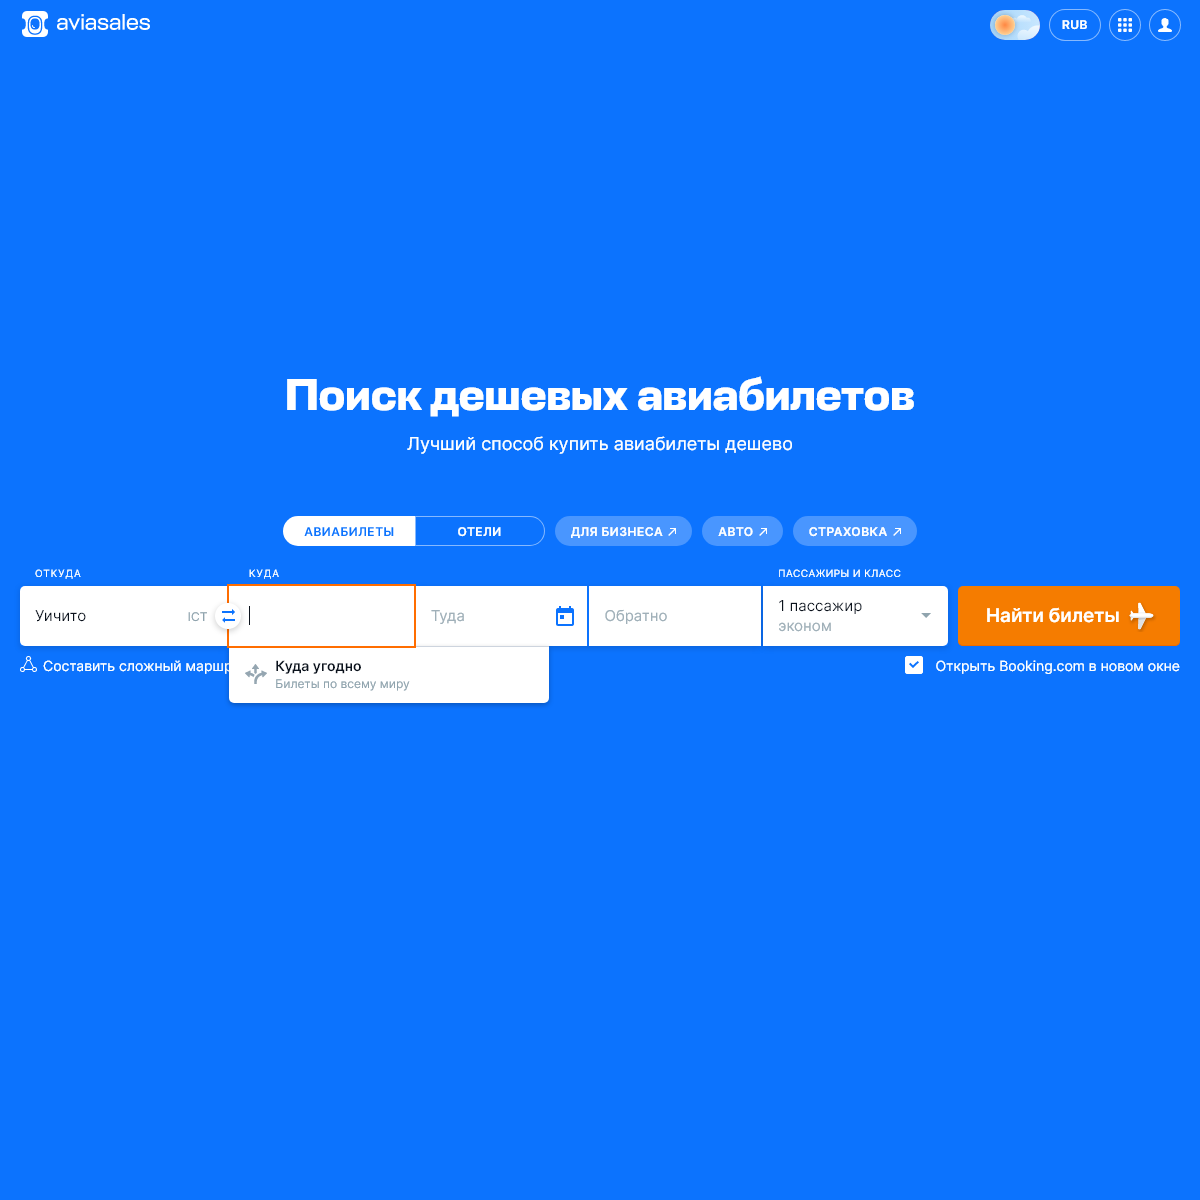 A complete backup of minskysoft.ru